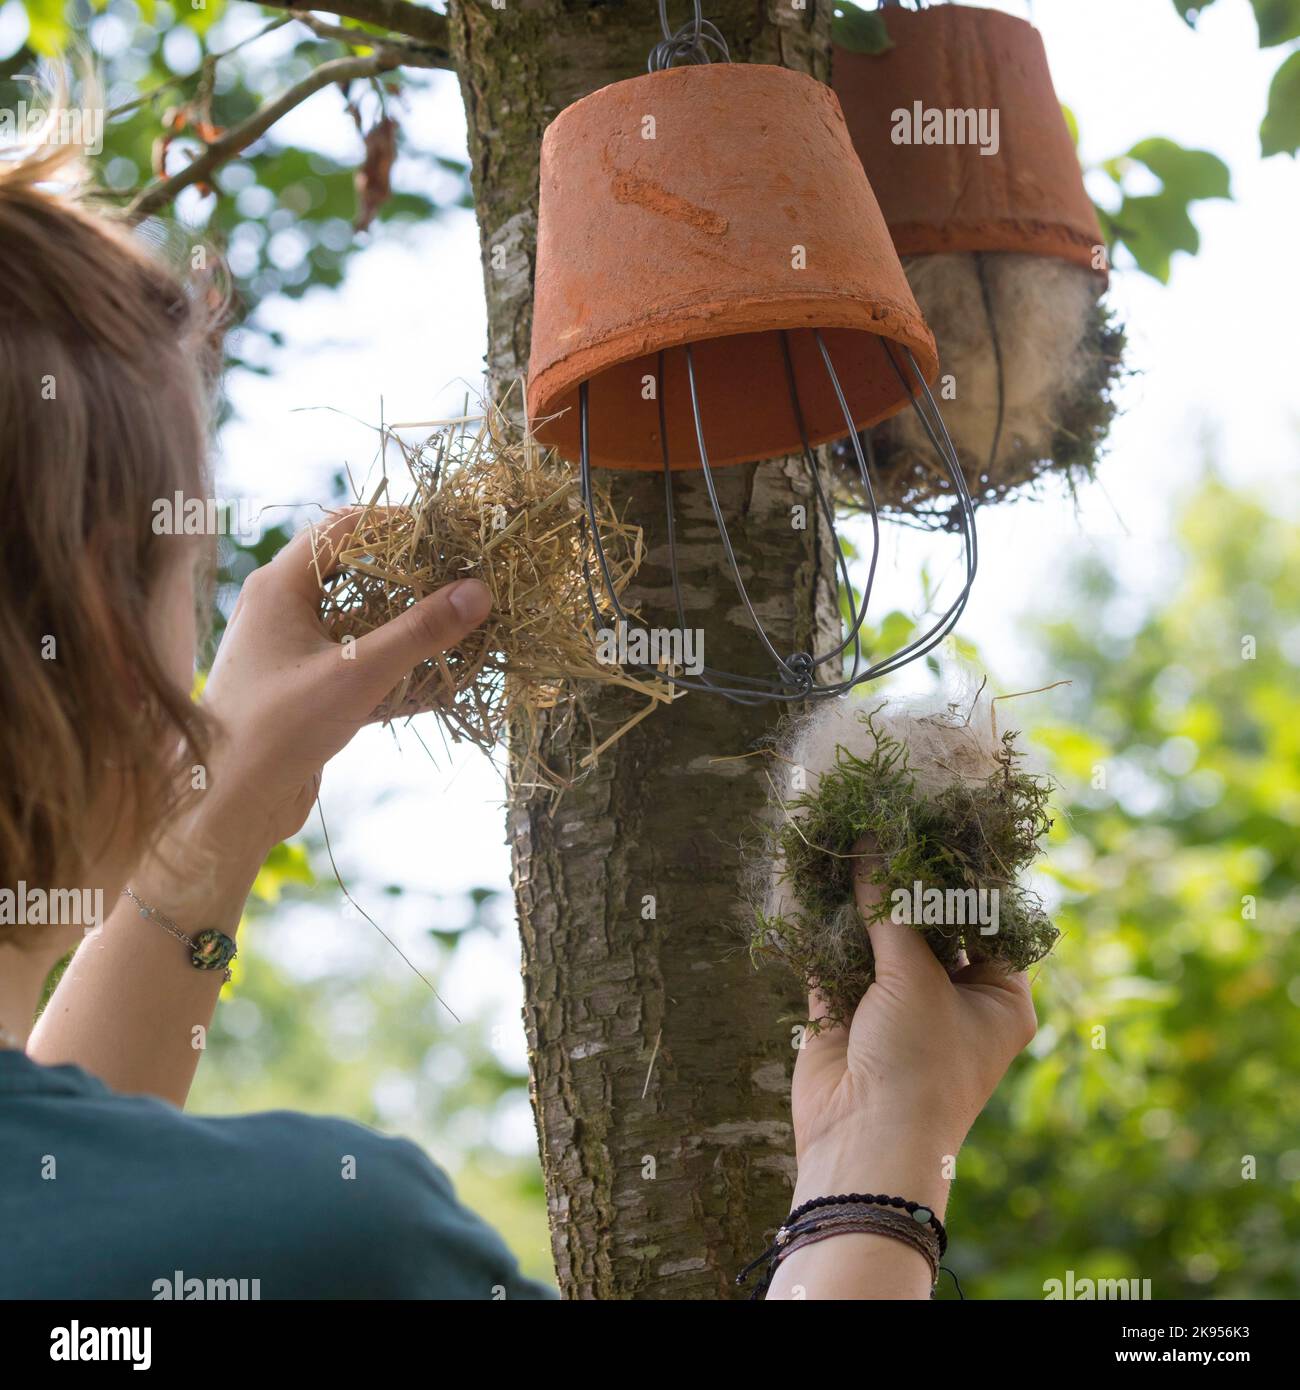 Dispenser für Nistmaterial für Vögel oder Eichhörnchen erstellen, Schritt 5: Blumentopf wird mit Nistmaterial gefüllt und aufgehängt, Serienbild 5/5 Stockfoto